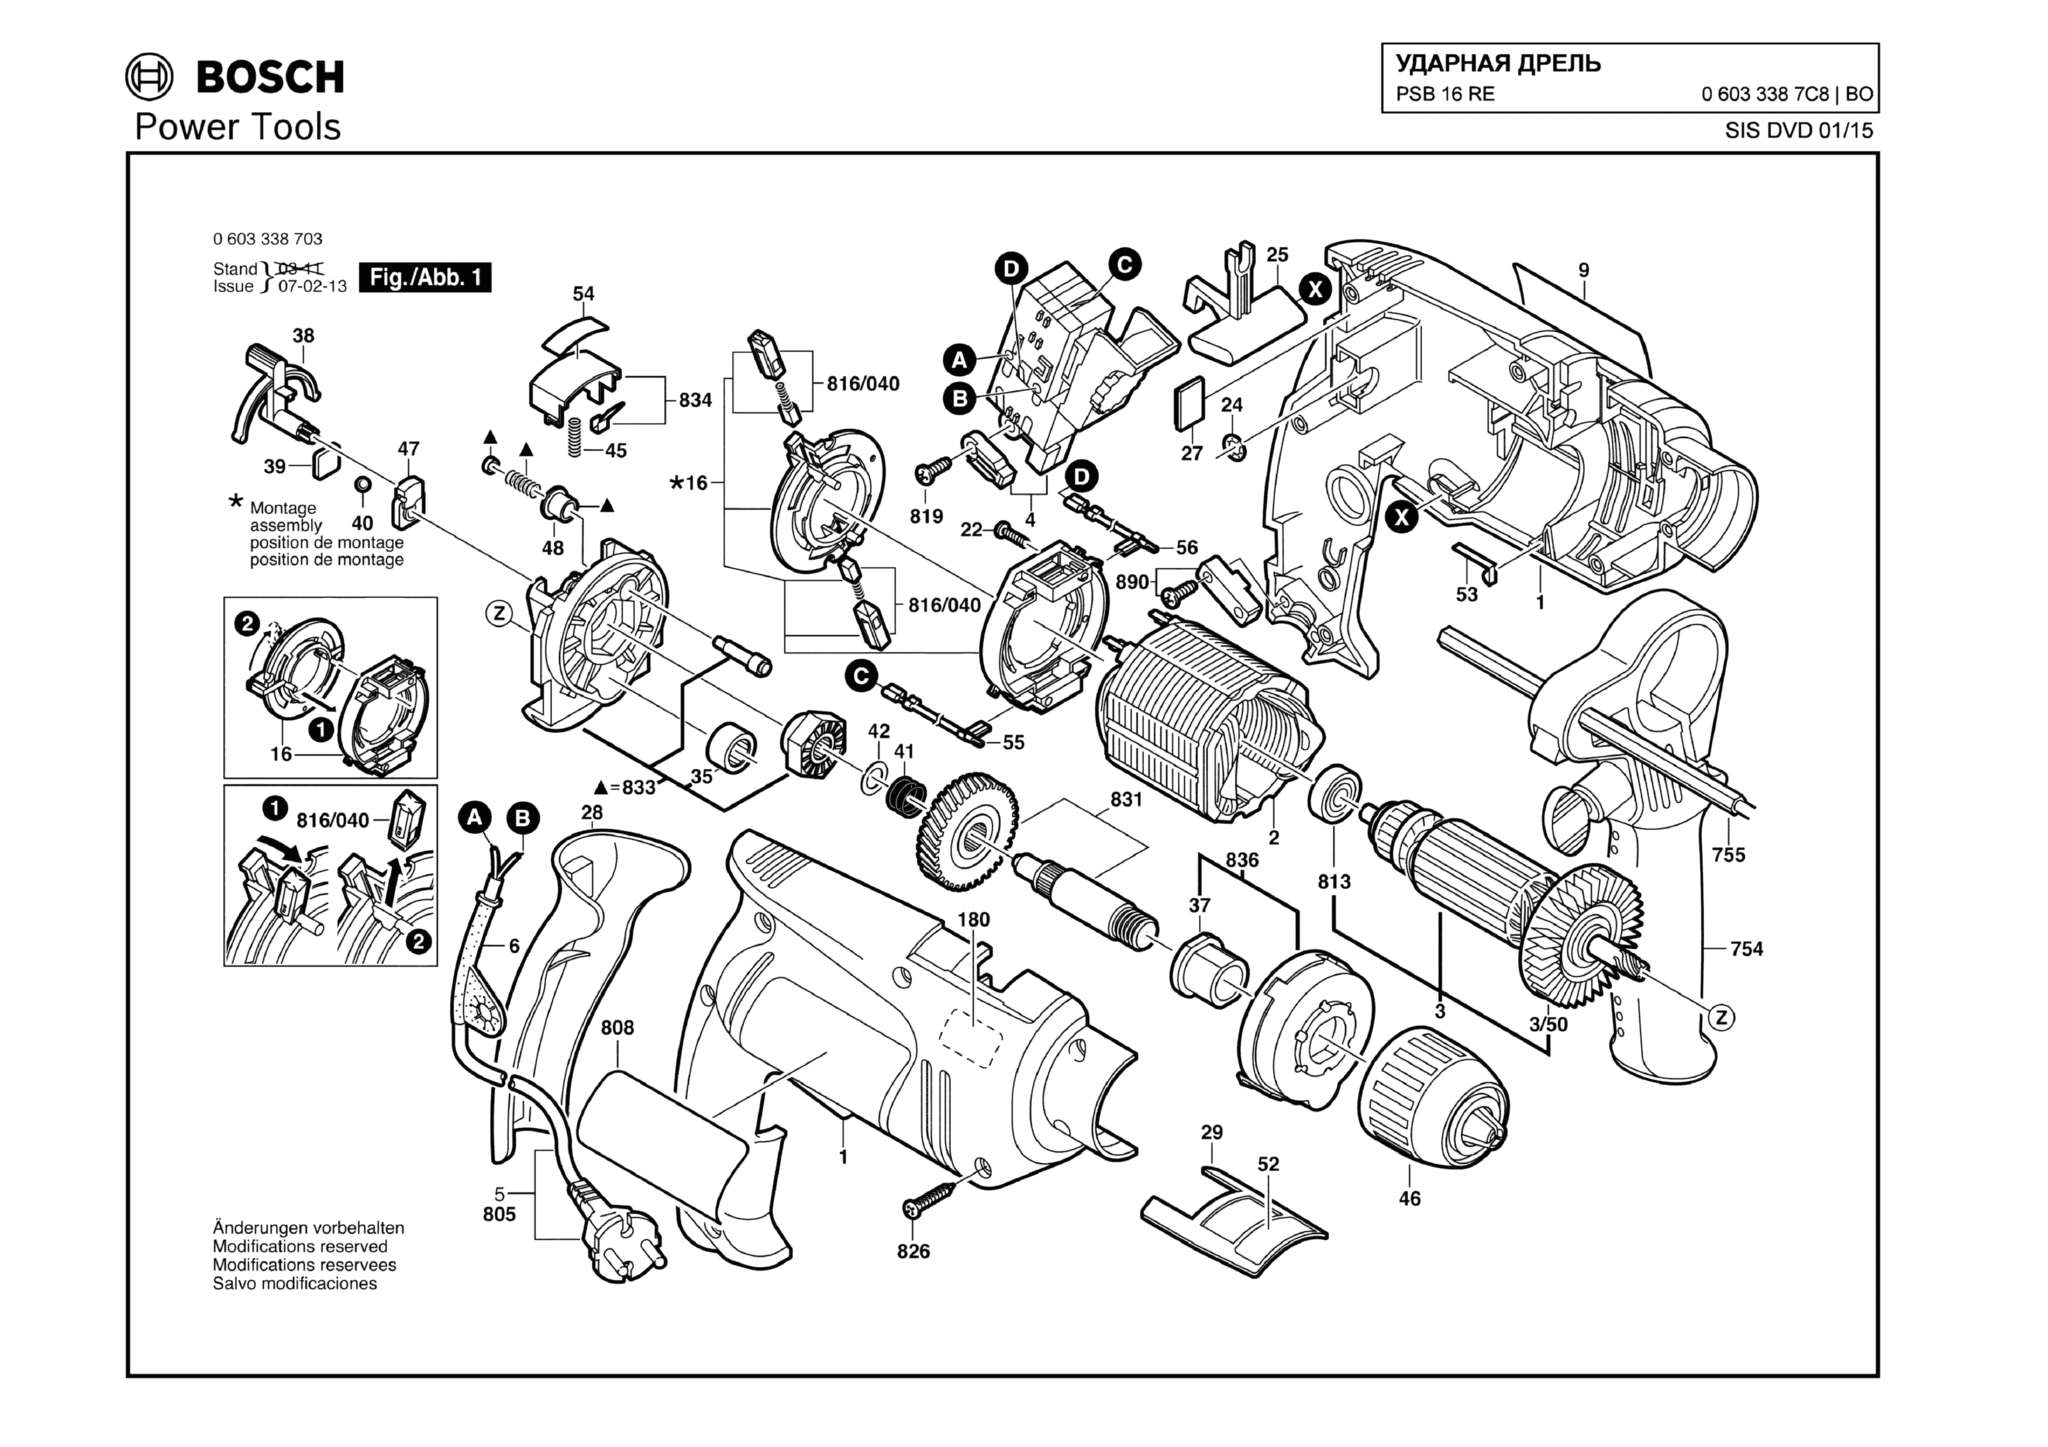 Запчасти, схема и деталировка Bosch PSB 16 RE (ТИП 06033387C8)